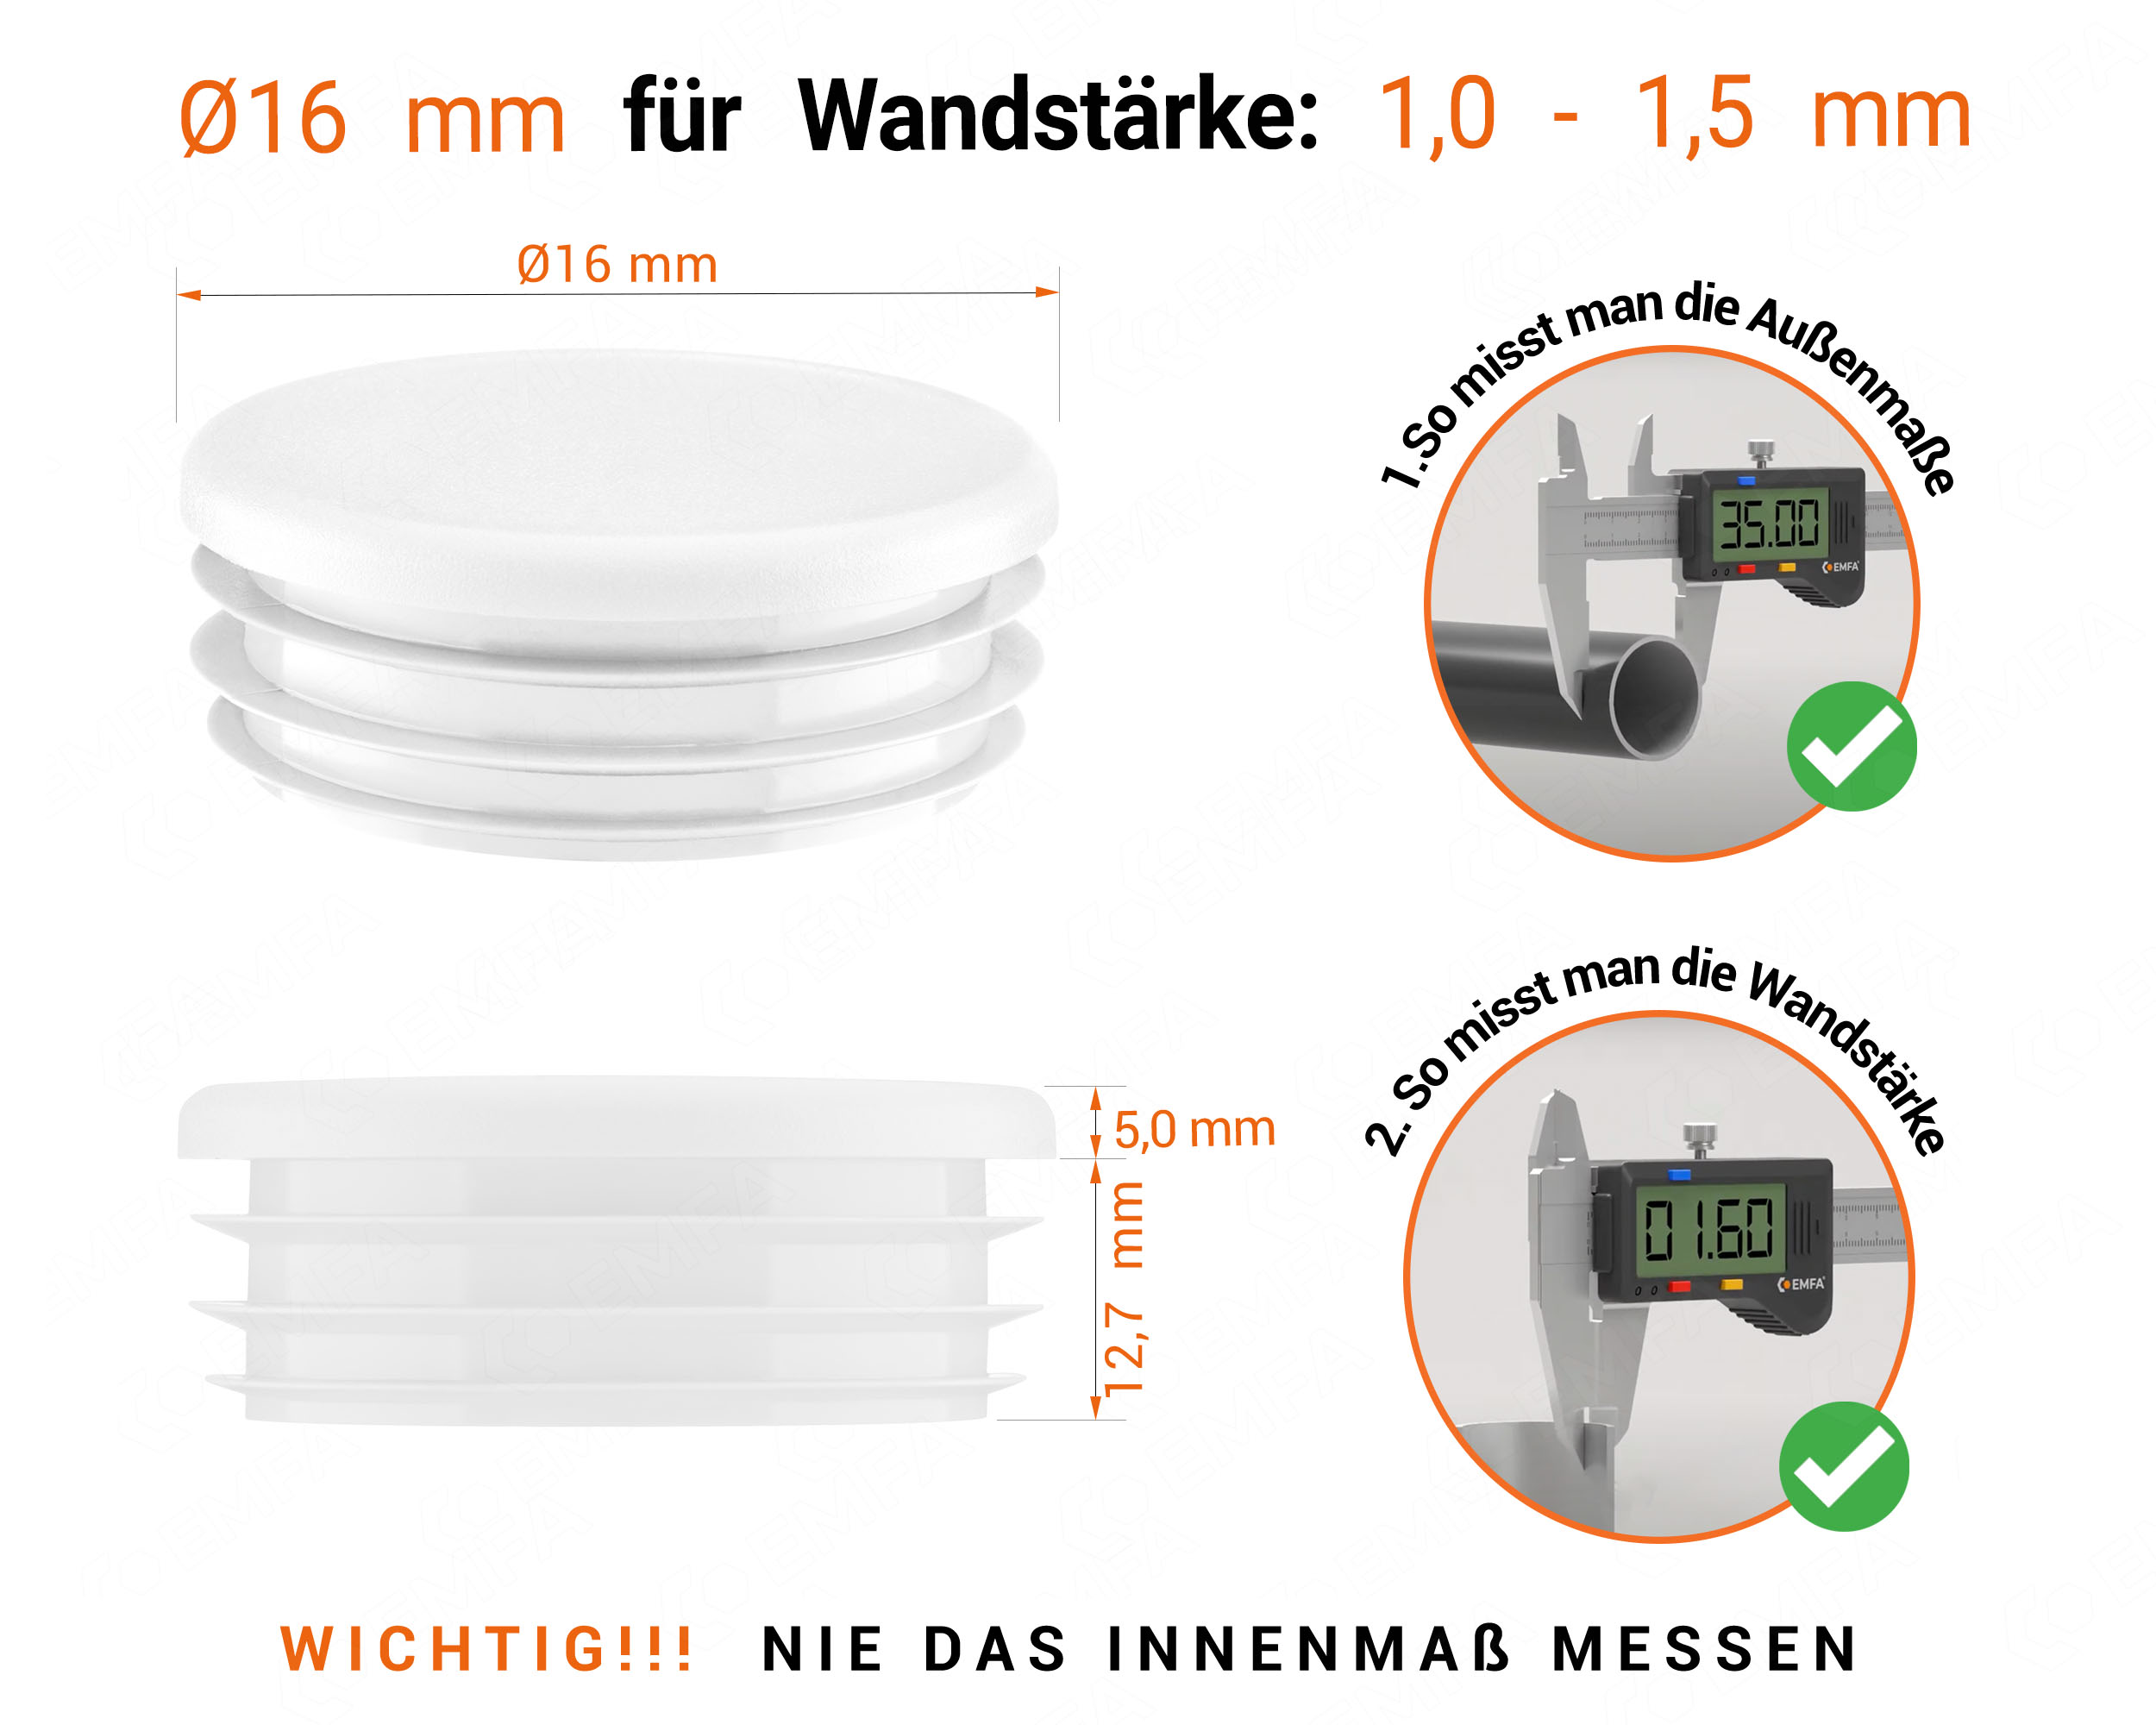 Weiße Endkappe für Rundrohre in der Größe 16 mm mit technischen Abmessungen und Anleitung für korrekte Messung